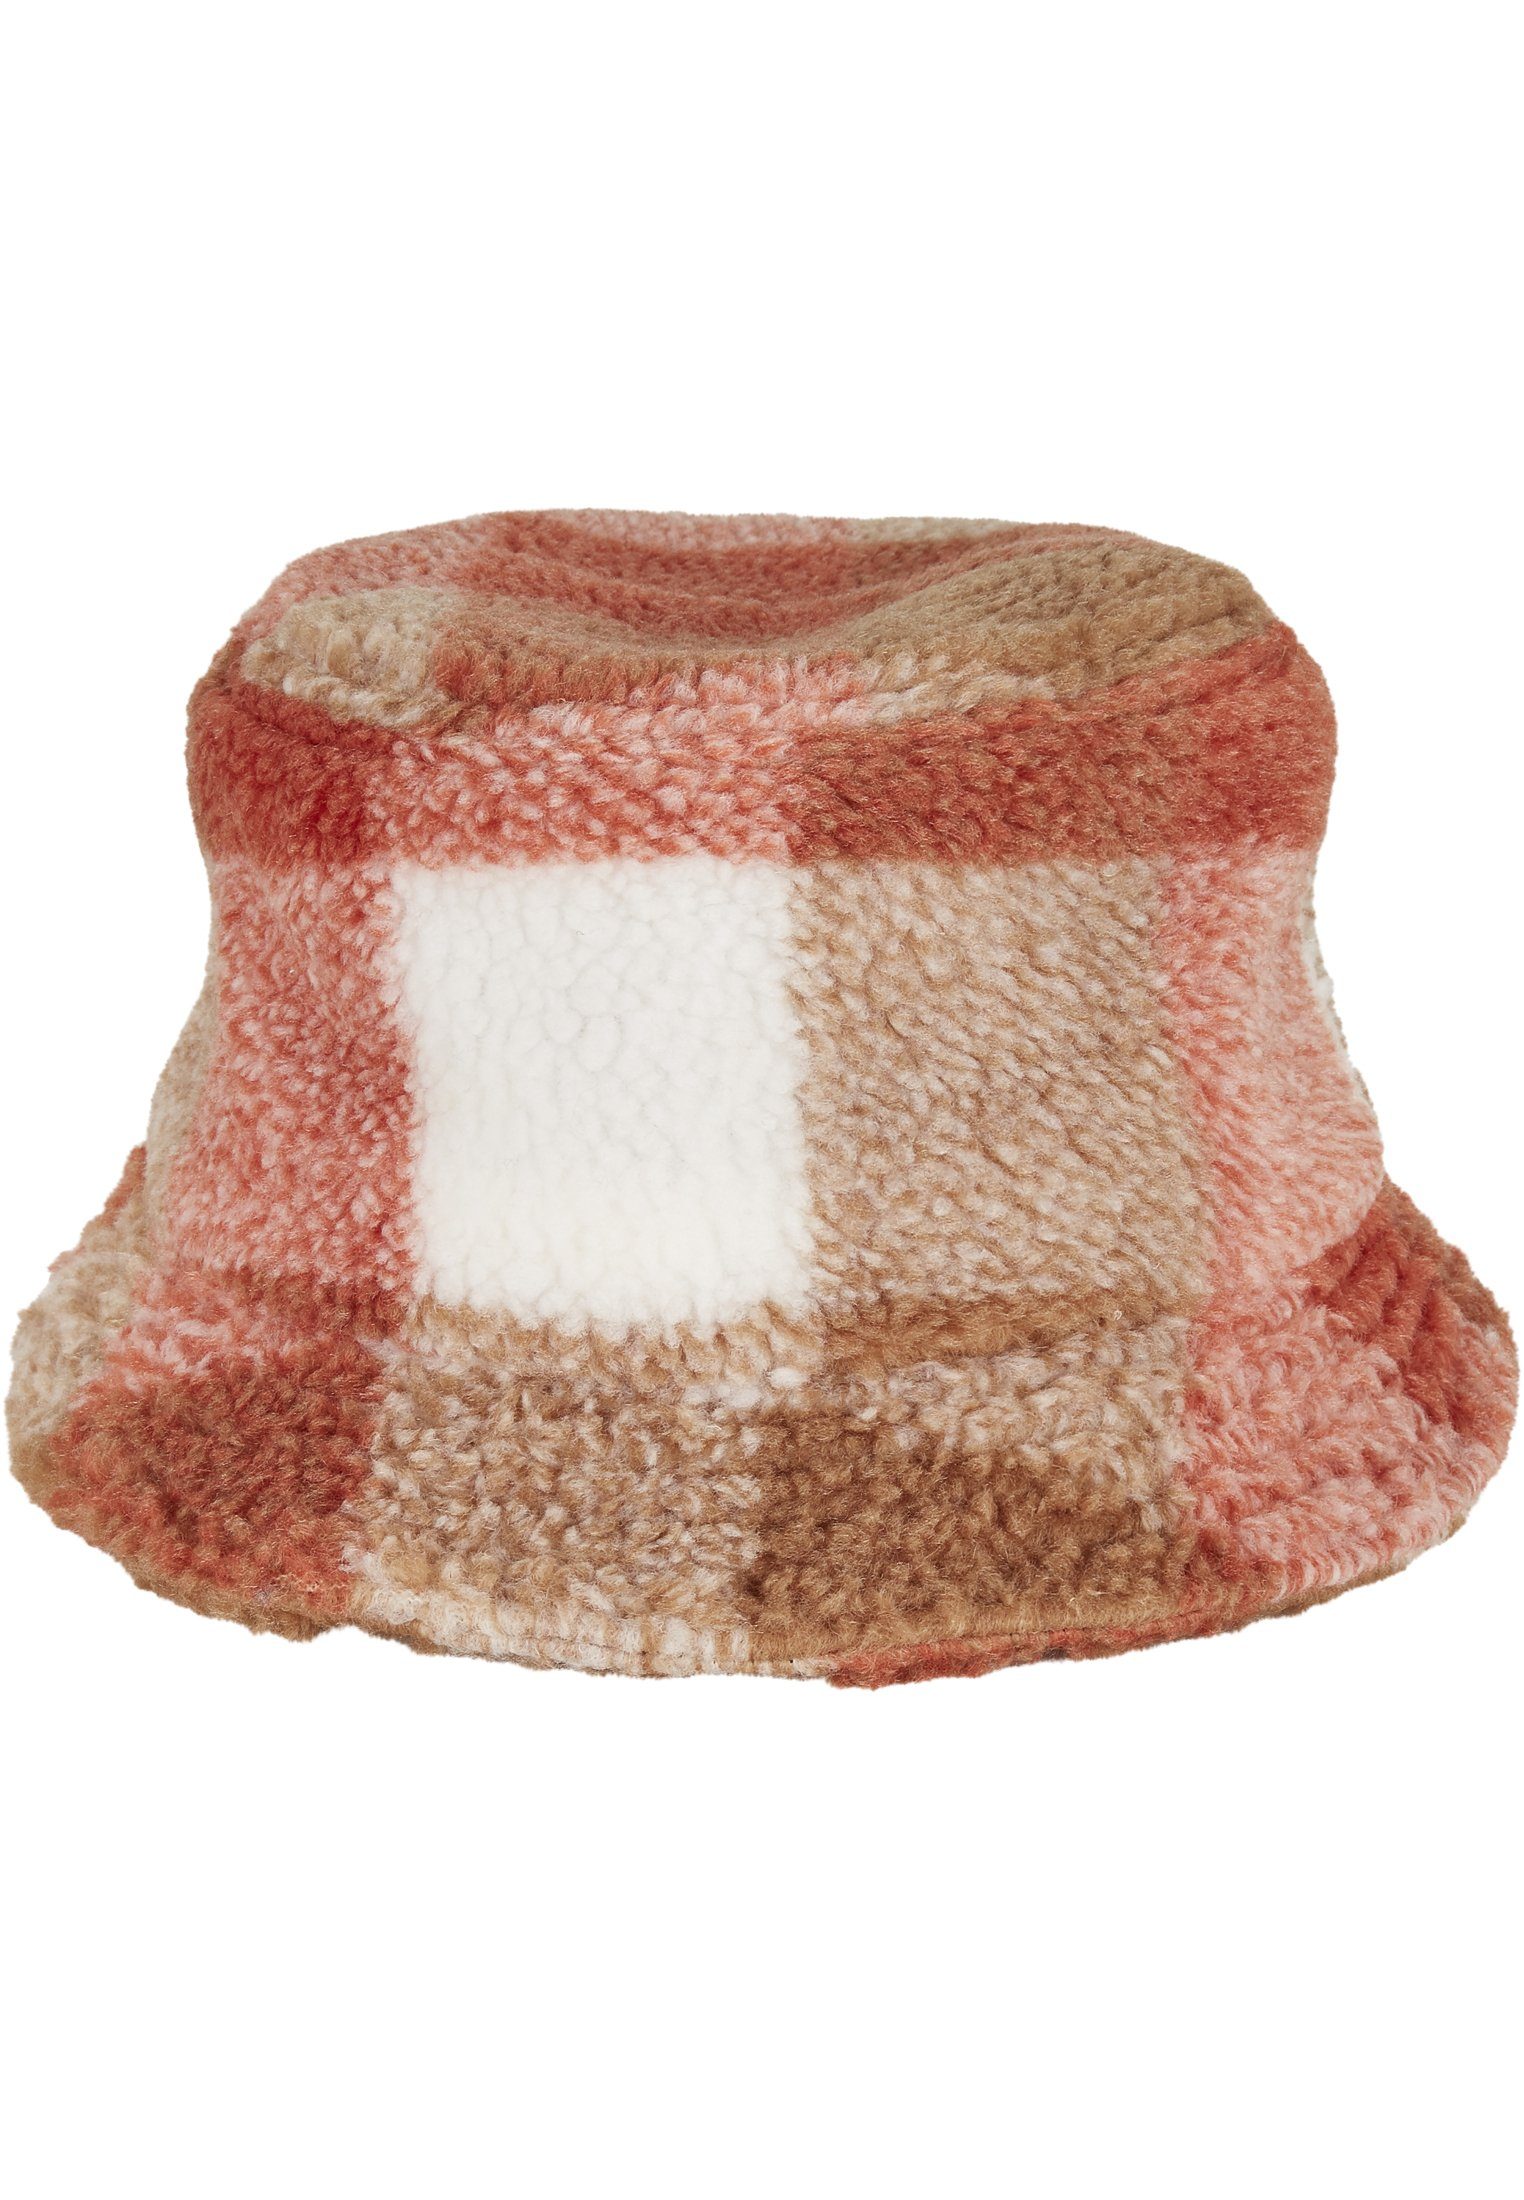 Bucket Cap Sherpa Hat Check Flex Flexfit Bucket Hat whitesand/toffee